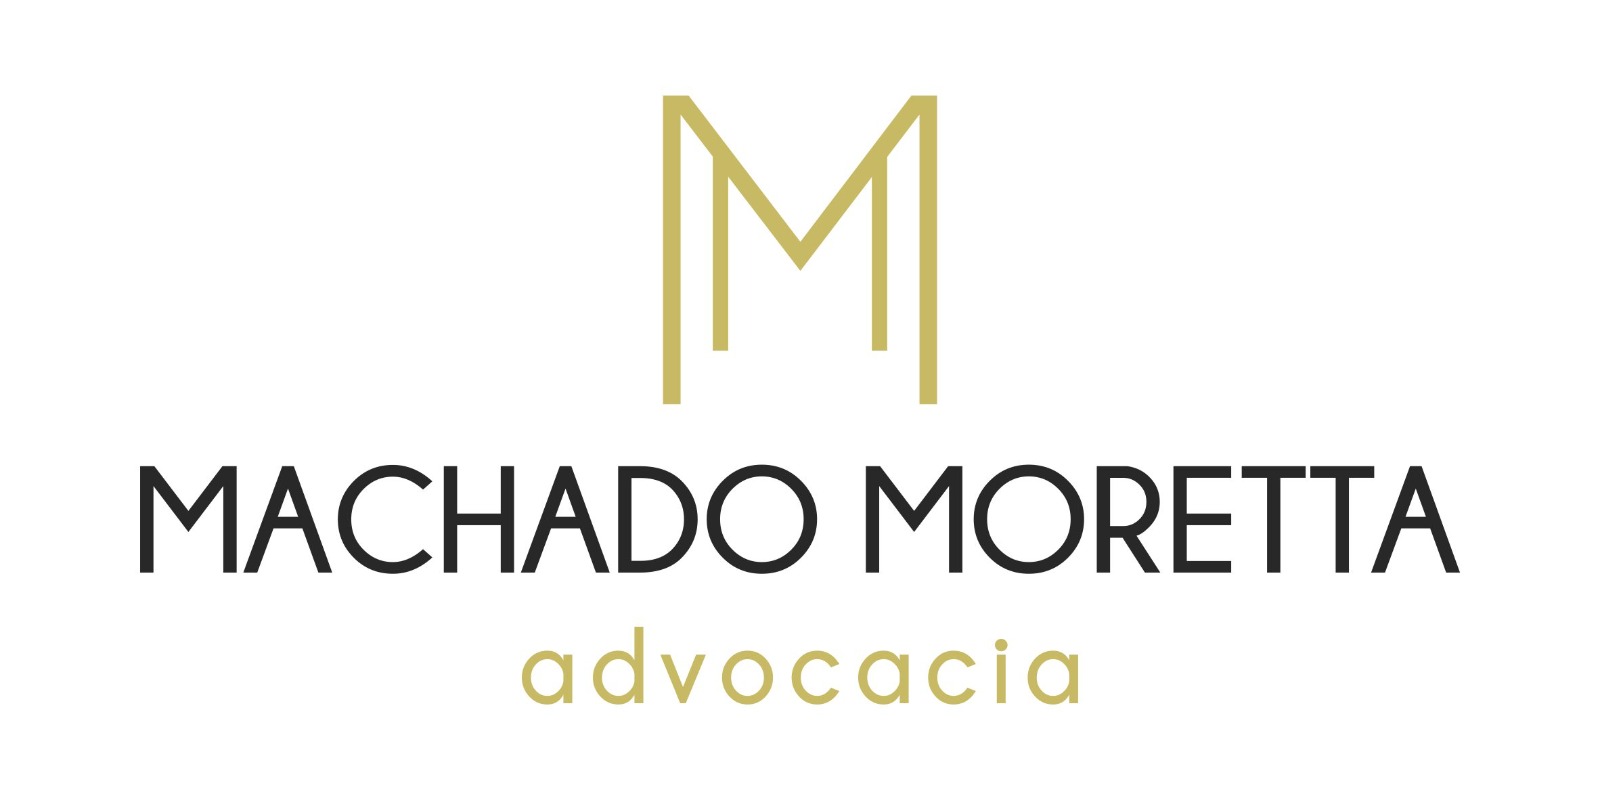 Machado Moretta Advogados